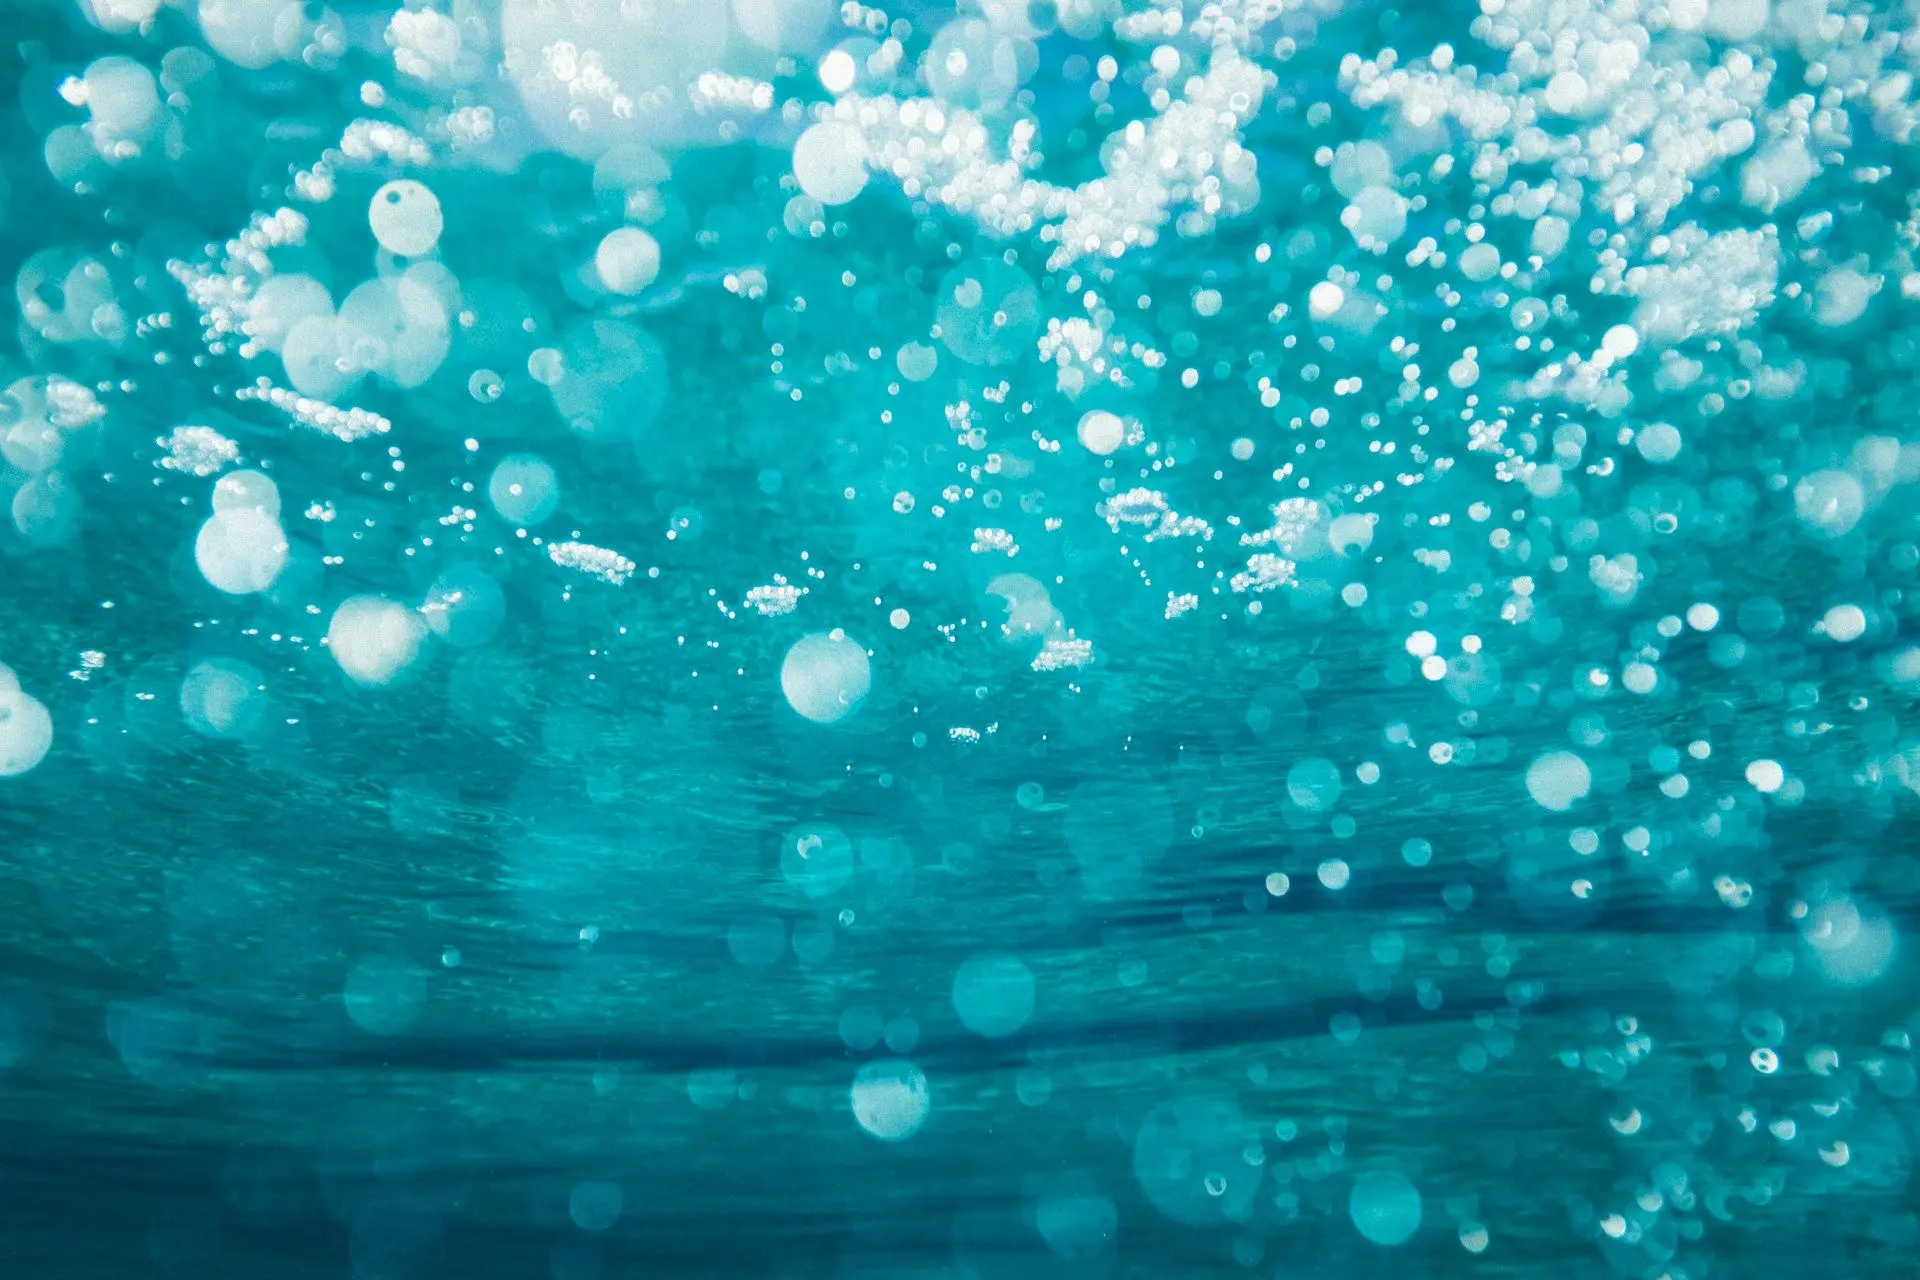 Науковці виявили простий спосіб видалення мікрочастинок пластику з води.